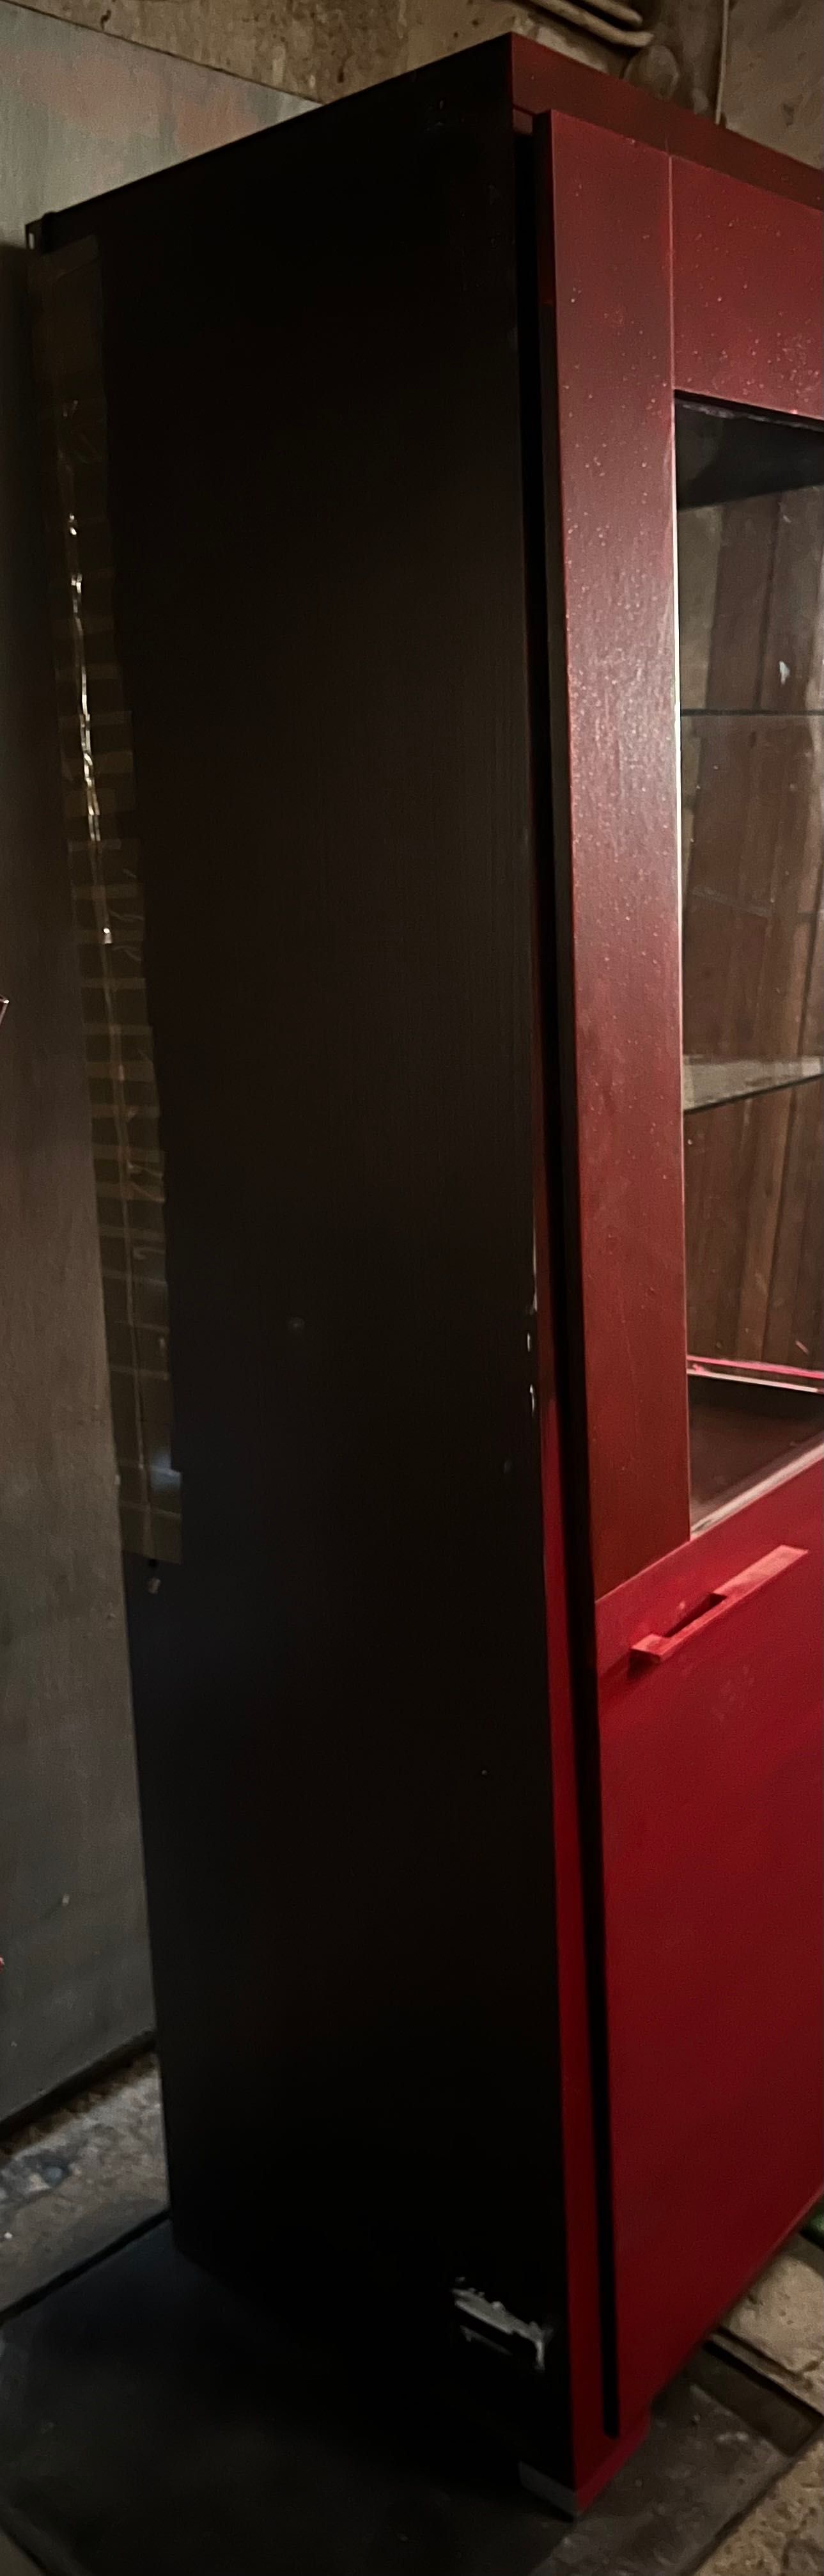 Szafa z półkami i drzwiami szklanymi czerwono brązowa